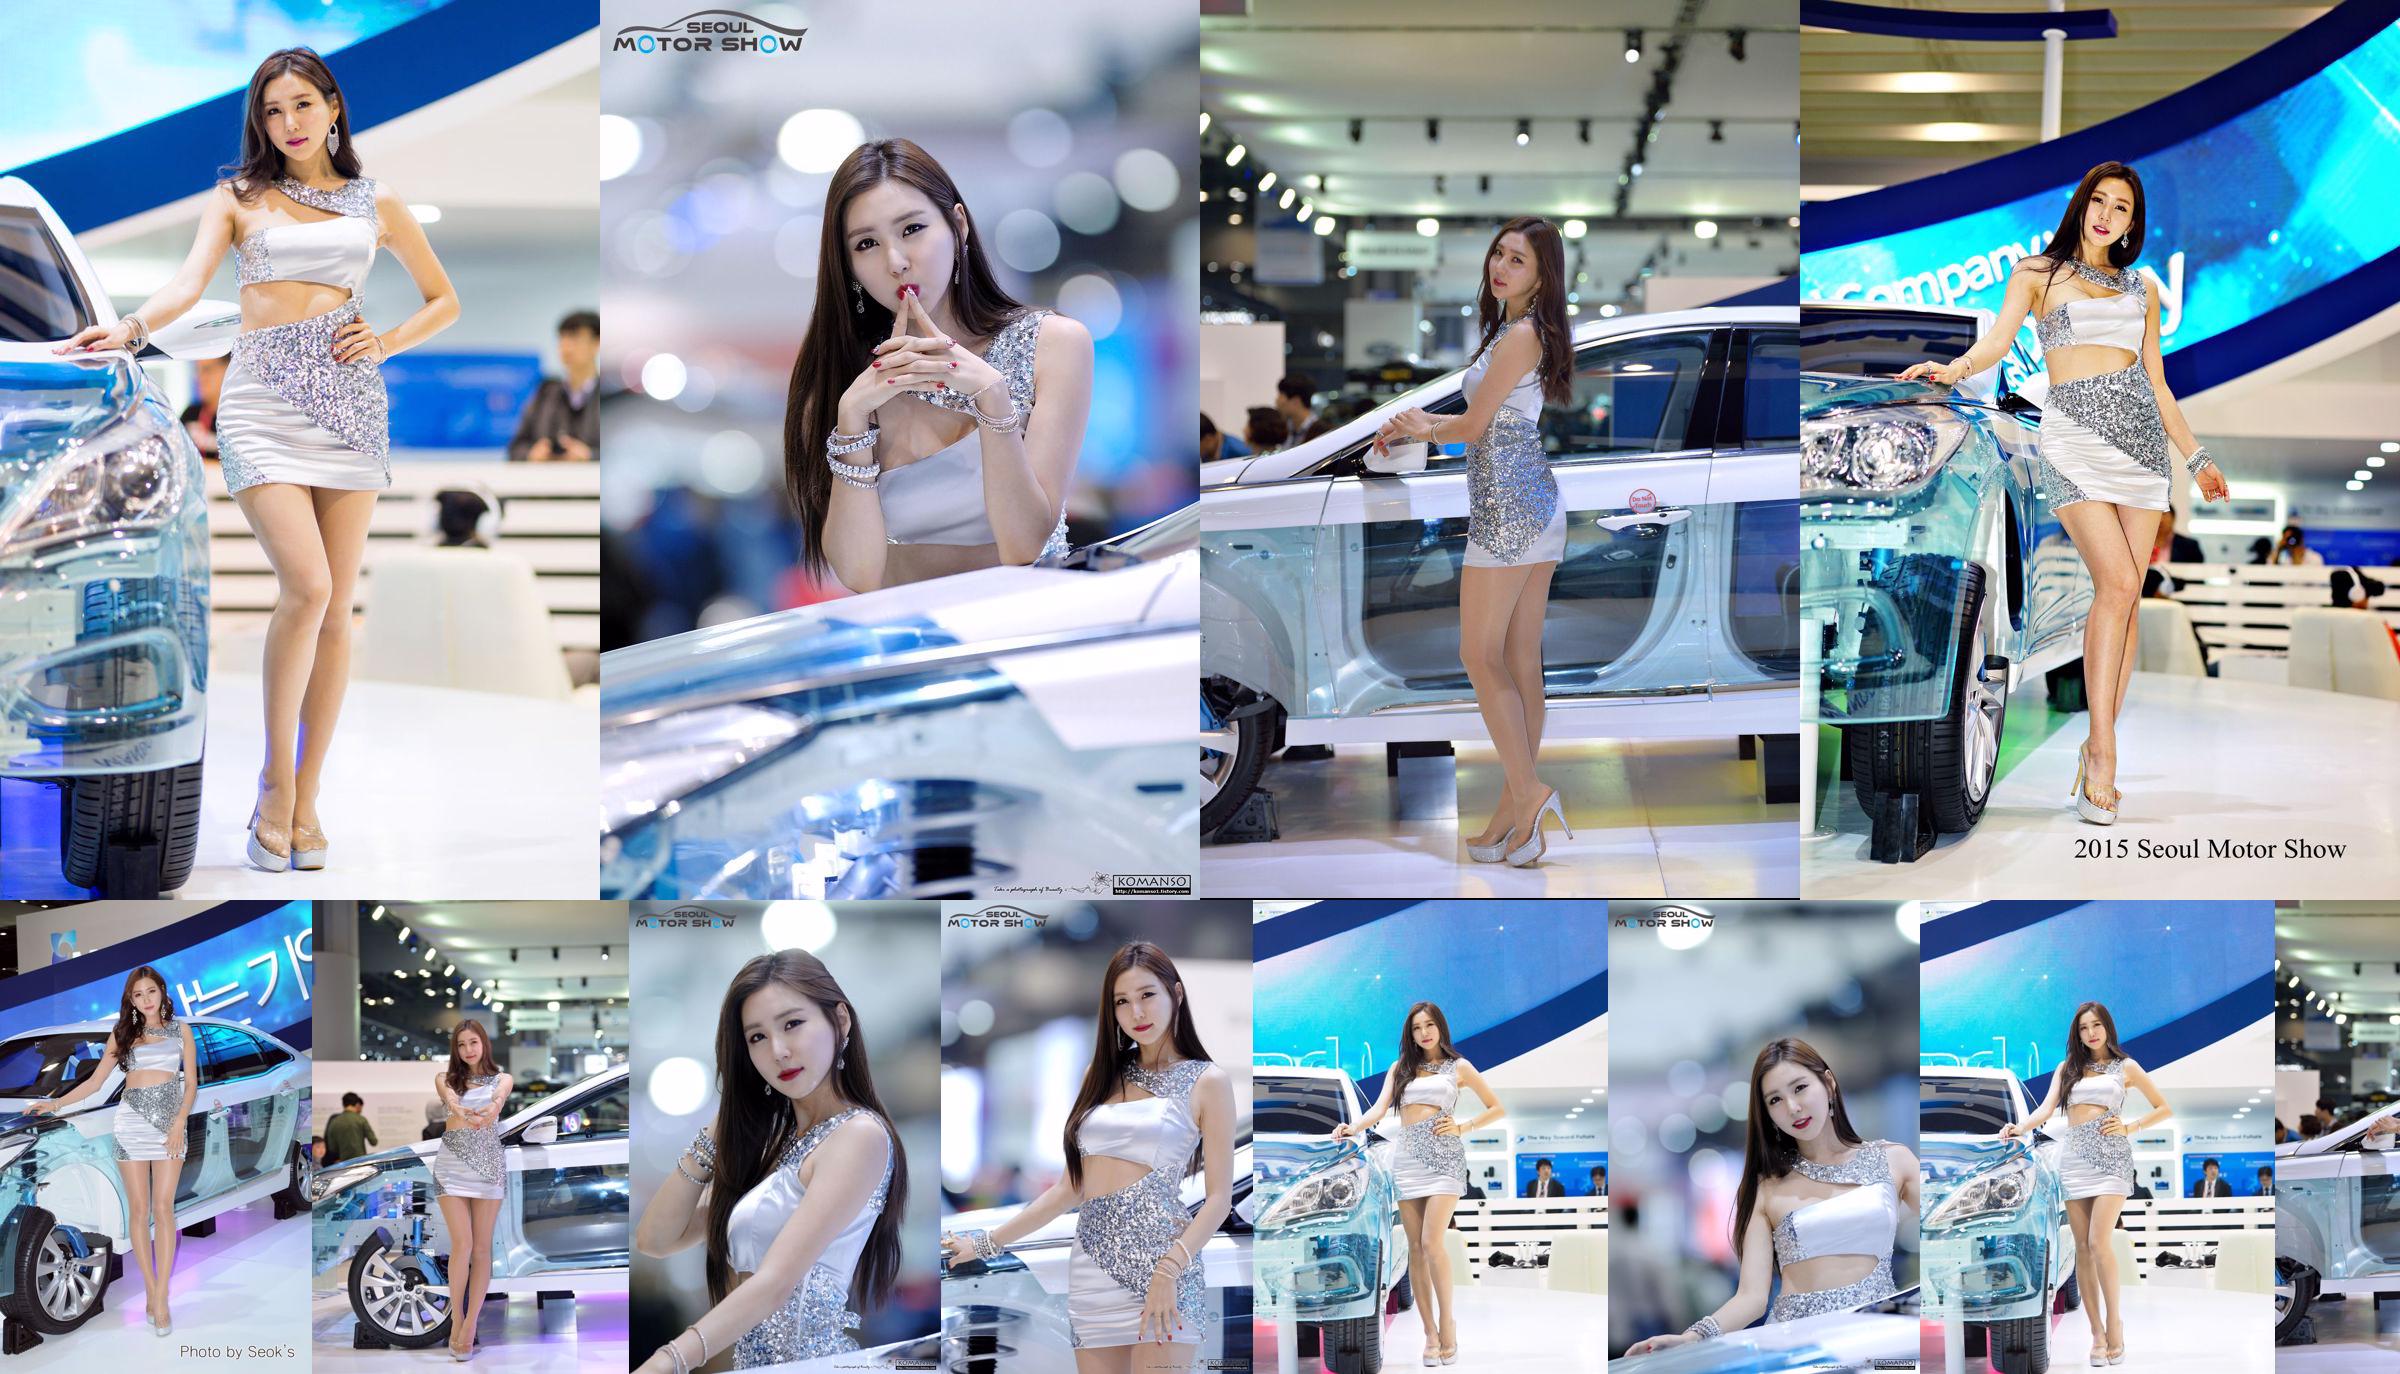 Modelo de coche coreano Choi Yujin-Auto Show Colección de imágenes No.eba44c Página 1